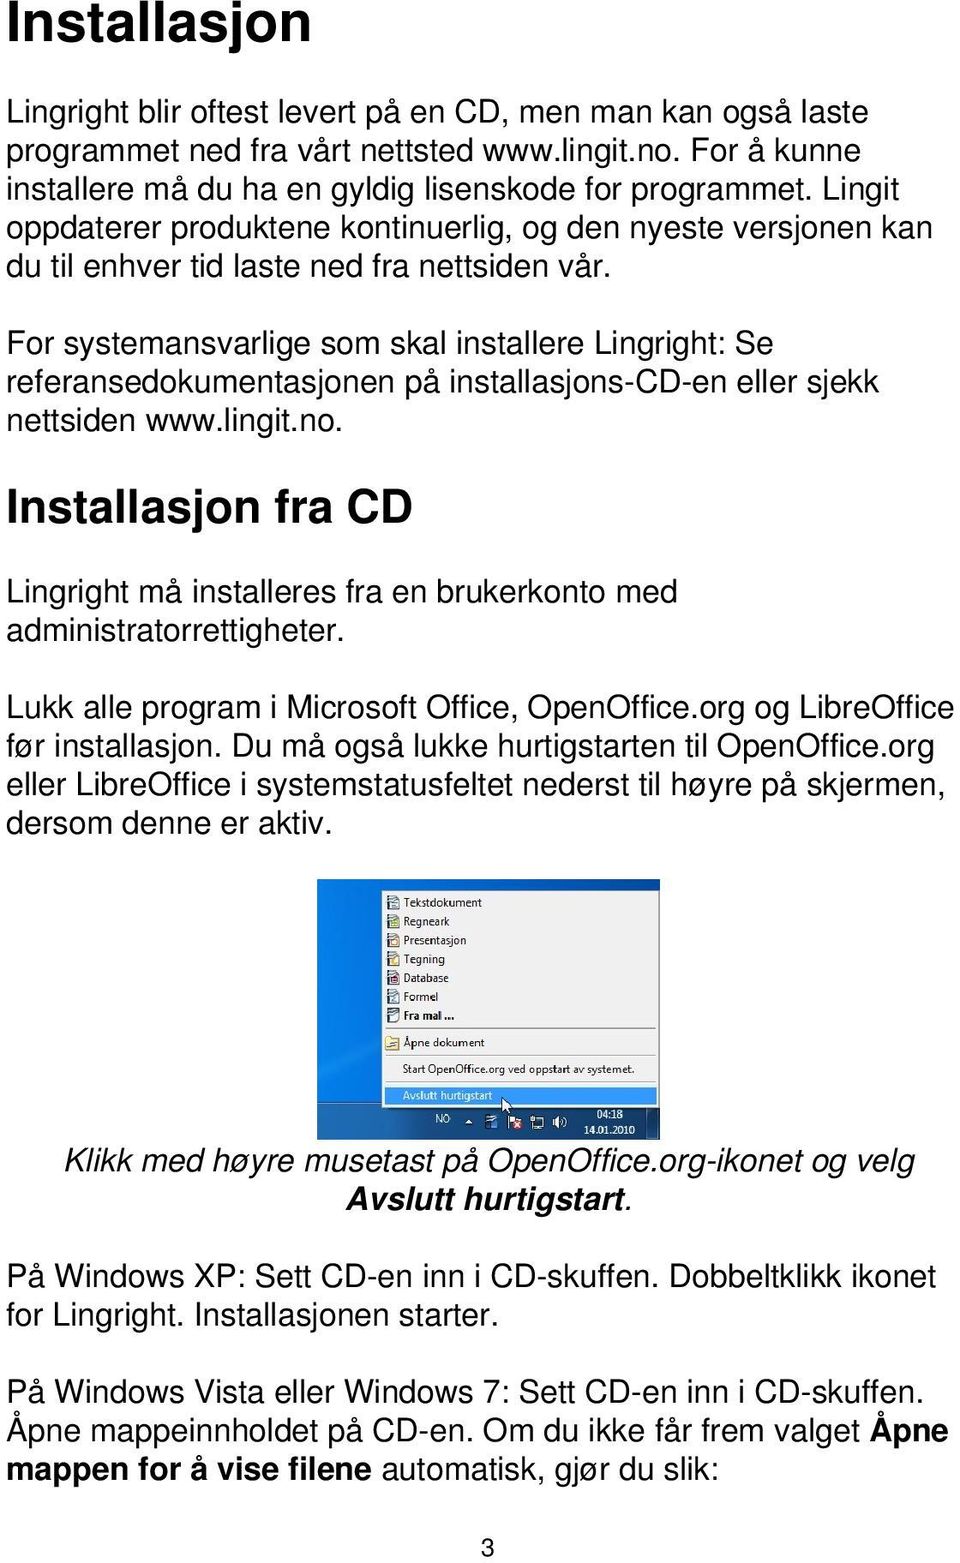 For systemansvarlige som skal installere Lingright: Se referansedokumentasjonen på installasjons-cd-en eller sjekk nettsiden www.lingit.no.